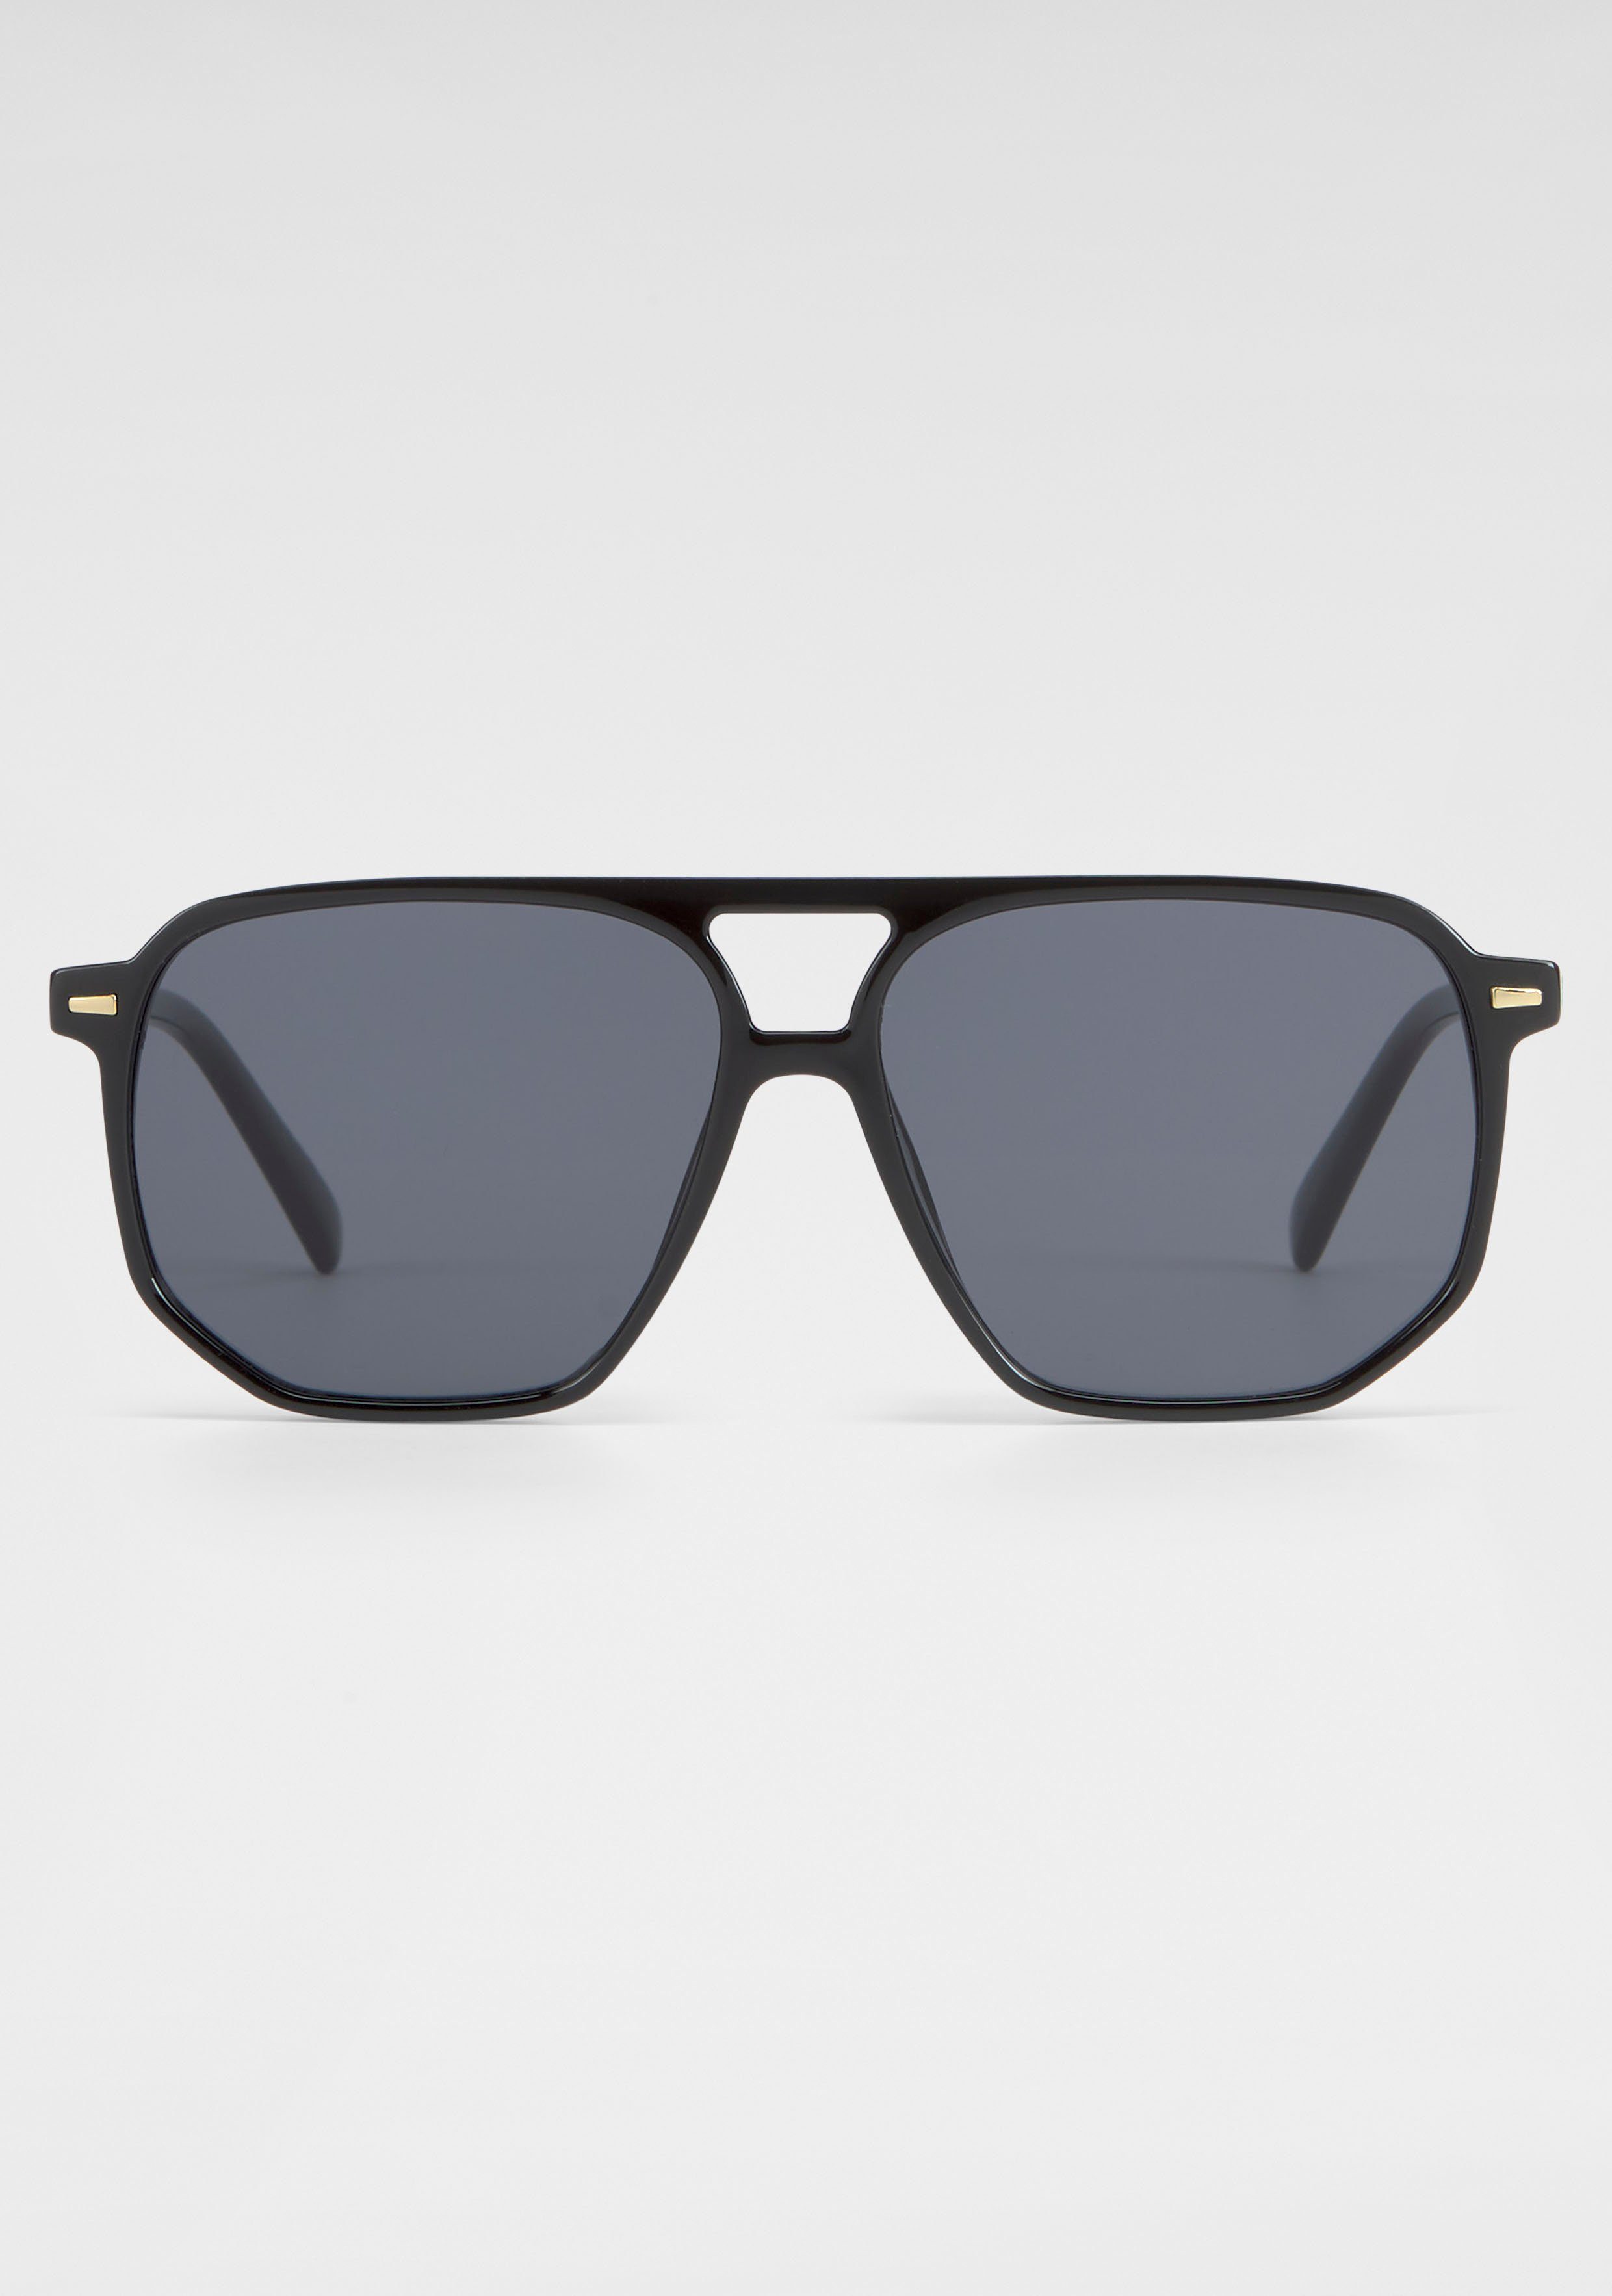 Sonnenbrille Eyewear Vollrand-Sonnenbrille Trendige SPIRIT LONDON YOUNG schwarz